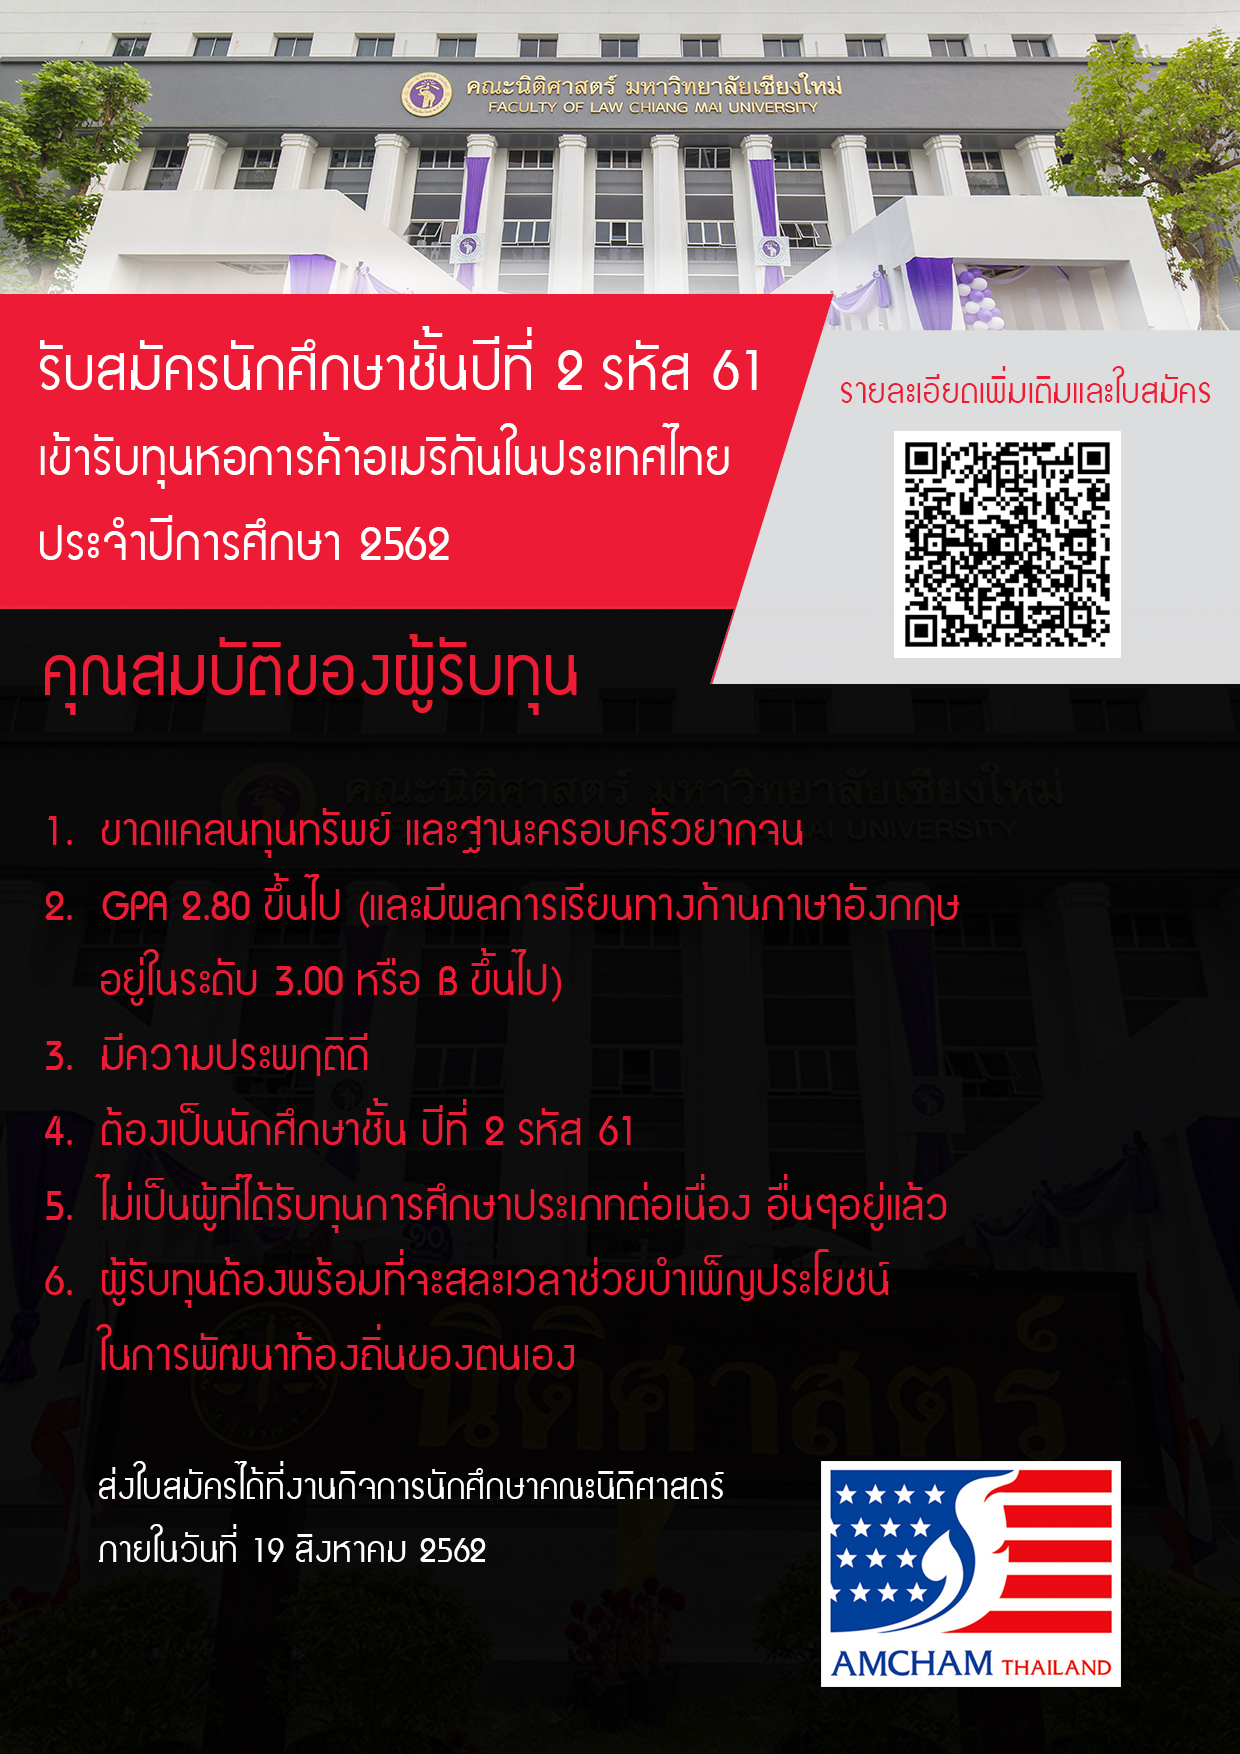 รับสมัครนักศึกษาชั้นปีที่ 2 รหัส 61 เข้ารับทุนหอการค้าอเมริกันในประเทศไทย ประจำปีการศึกษา 2562 